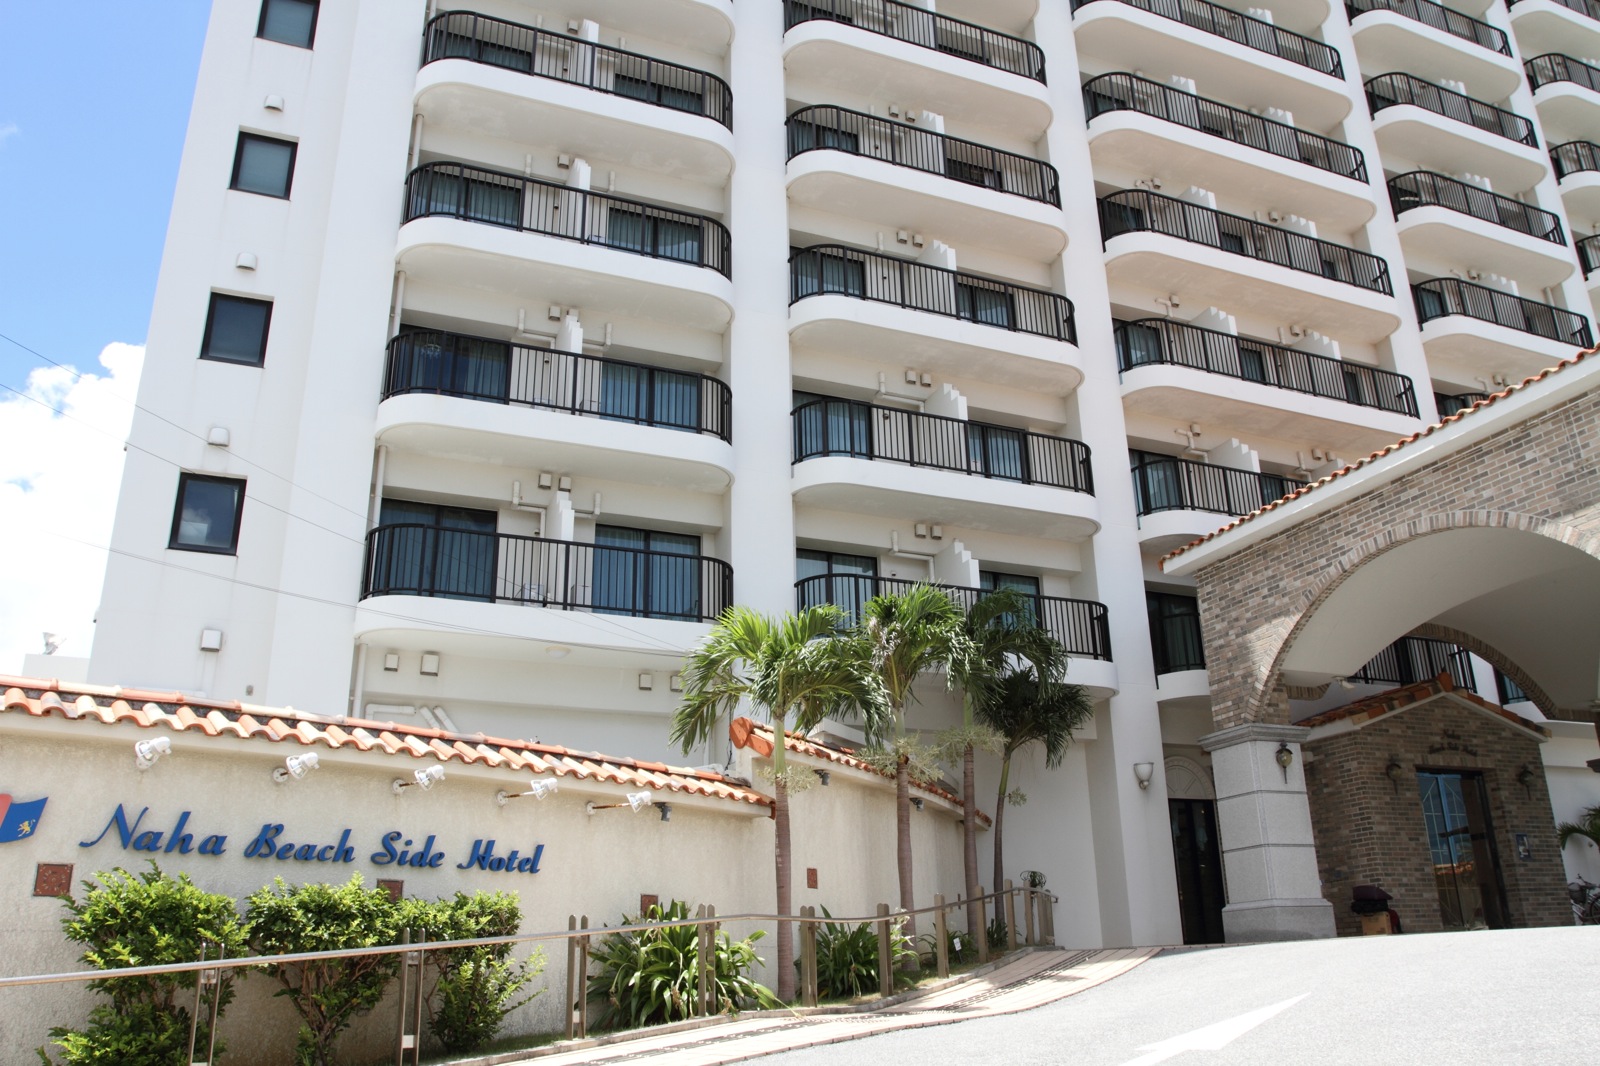 沖縄GRGホテルズ株式会社 那覇市内に5施設。快適なホテルライフと、真心のこもったおもてなしを。